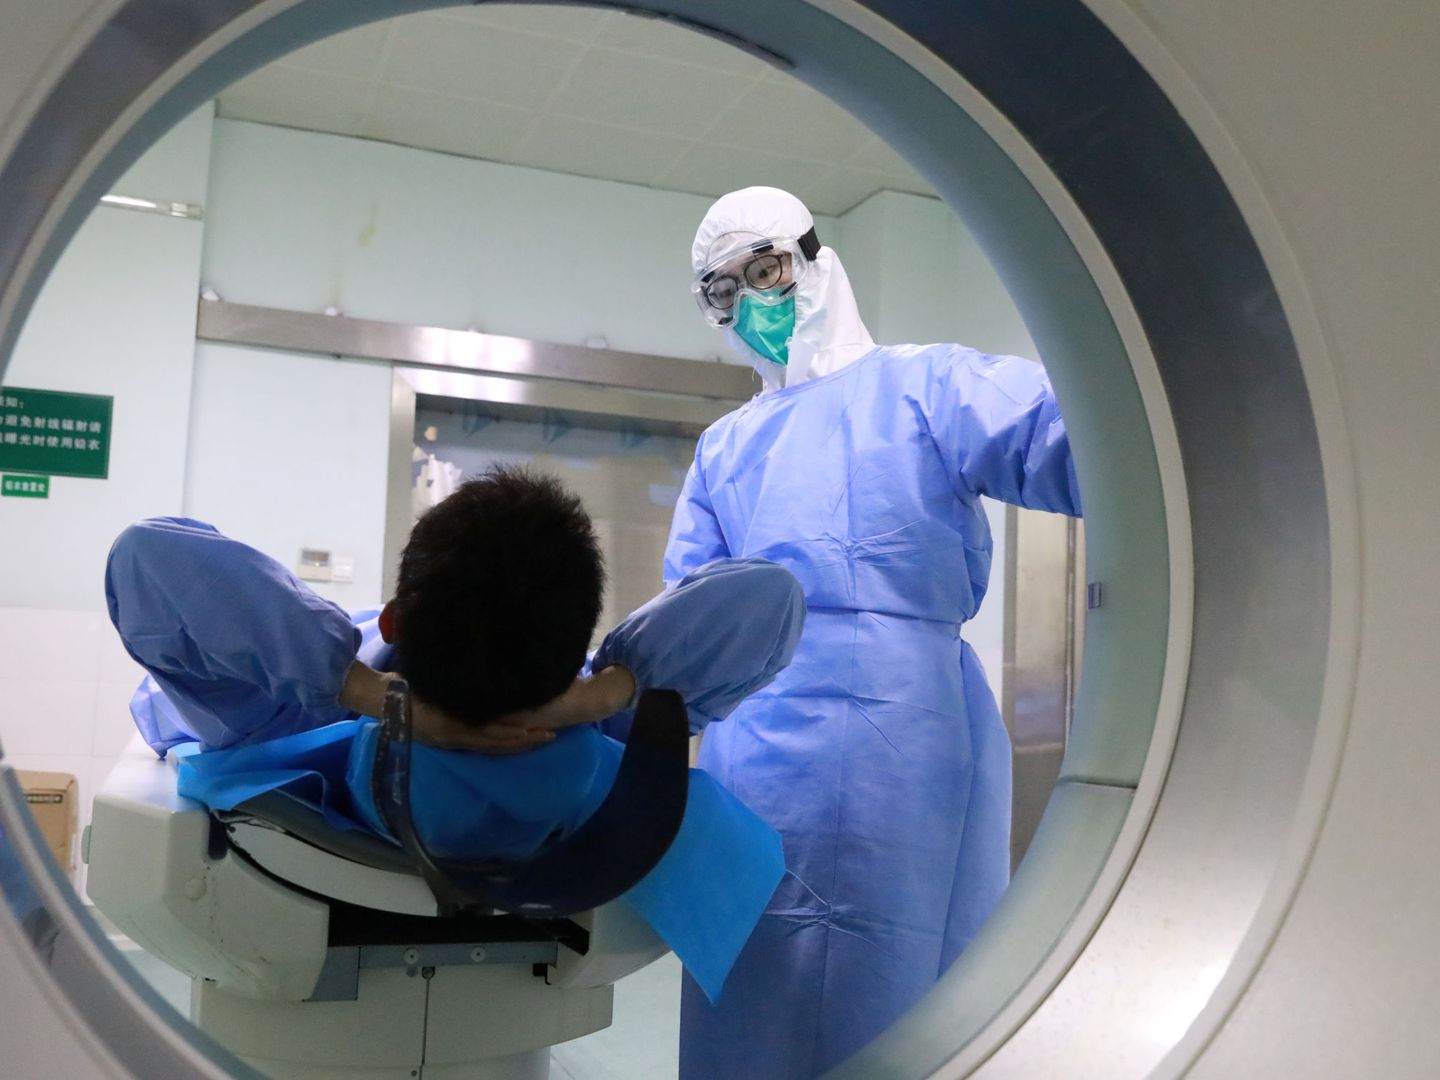 Pruebas médicas en el hospital Zhongnan. (Reuters)